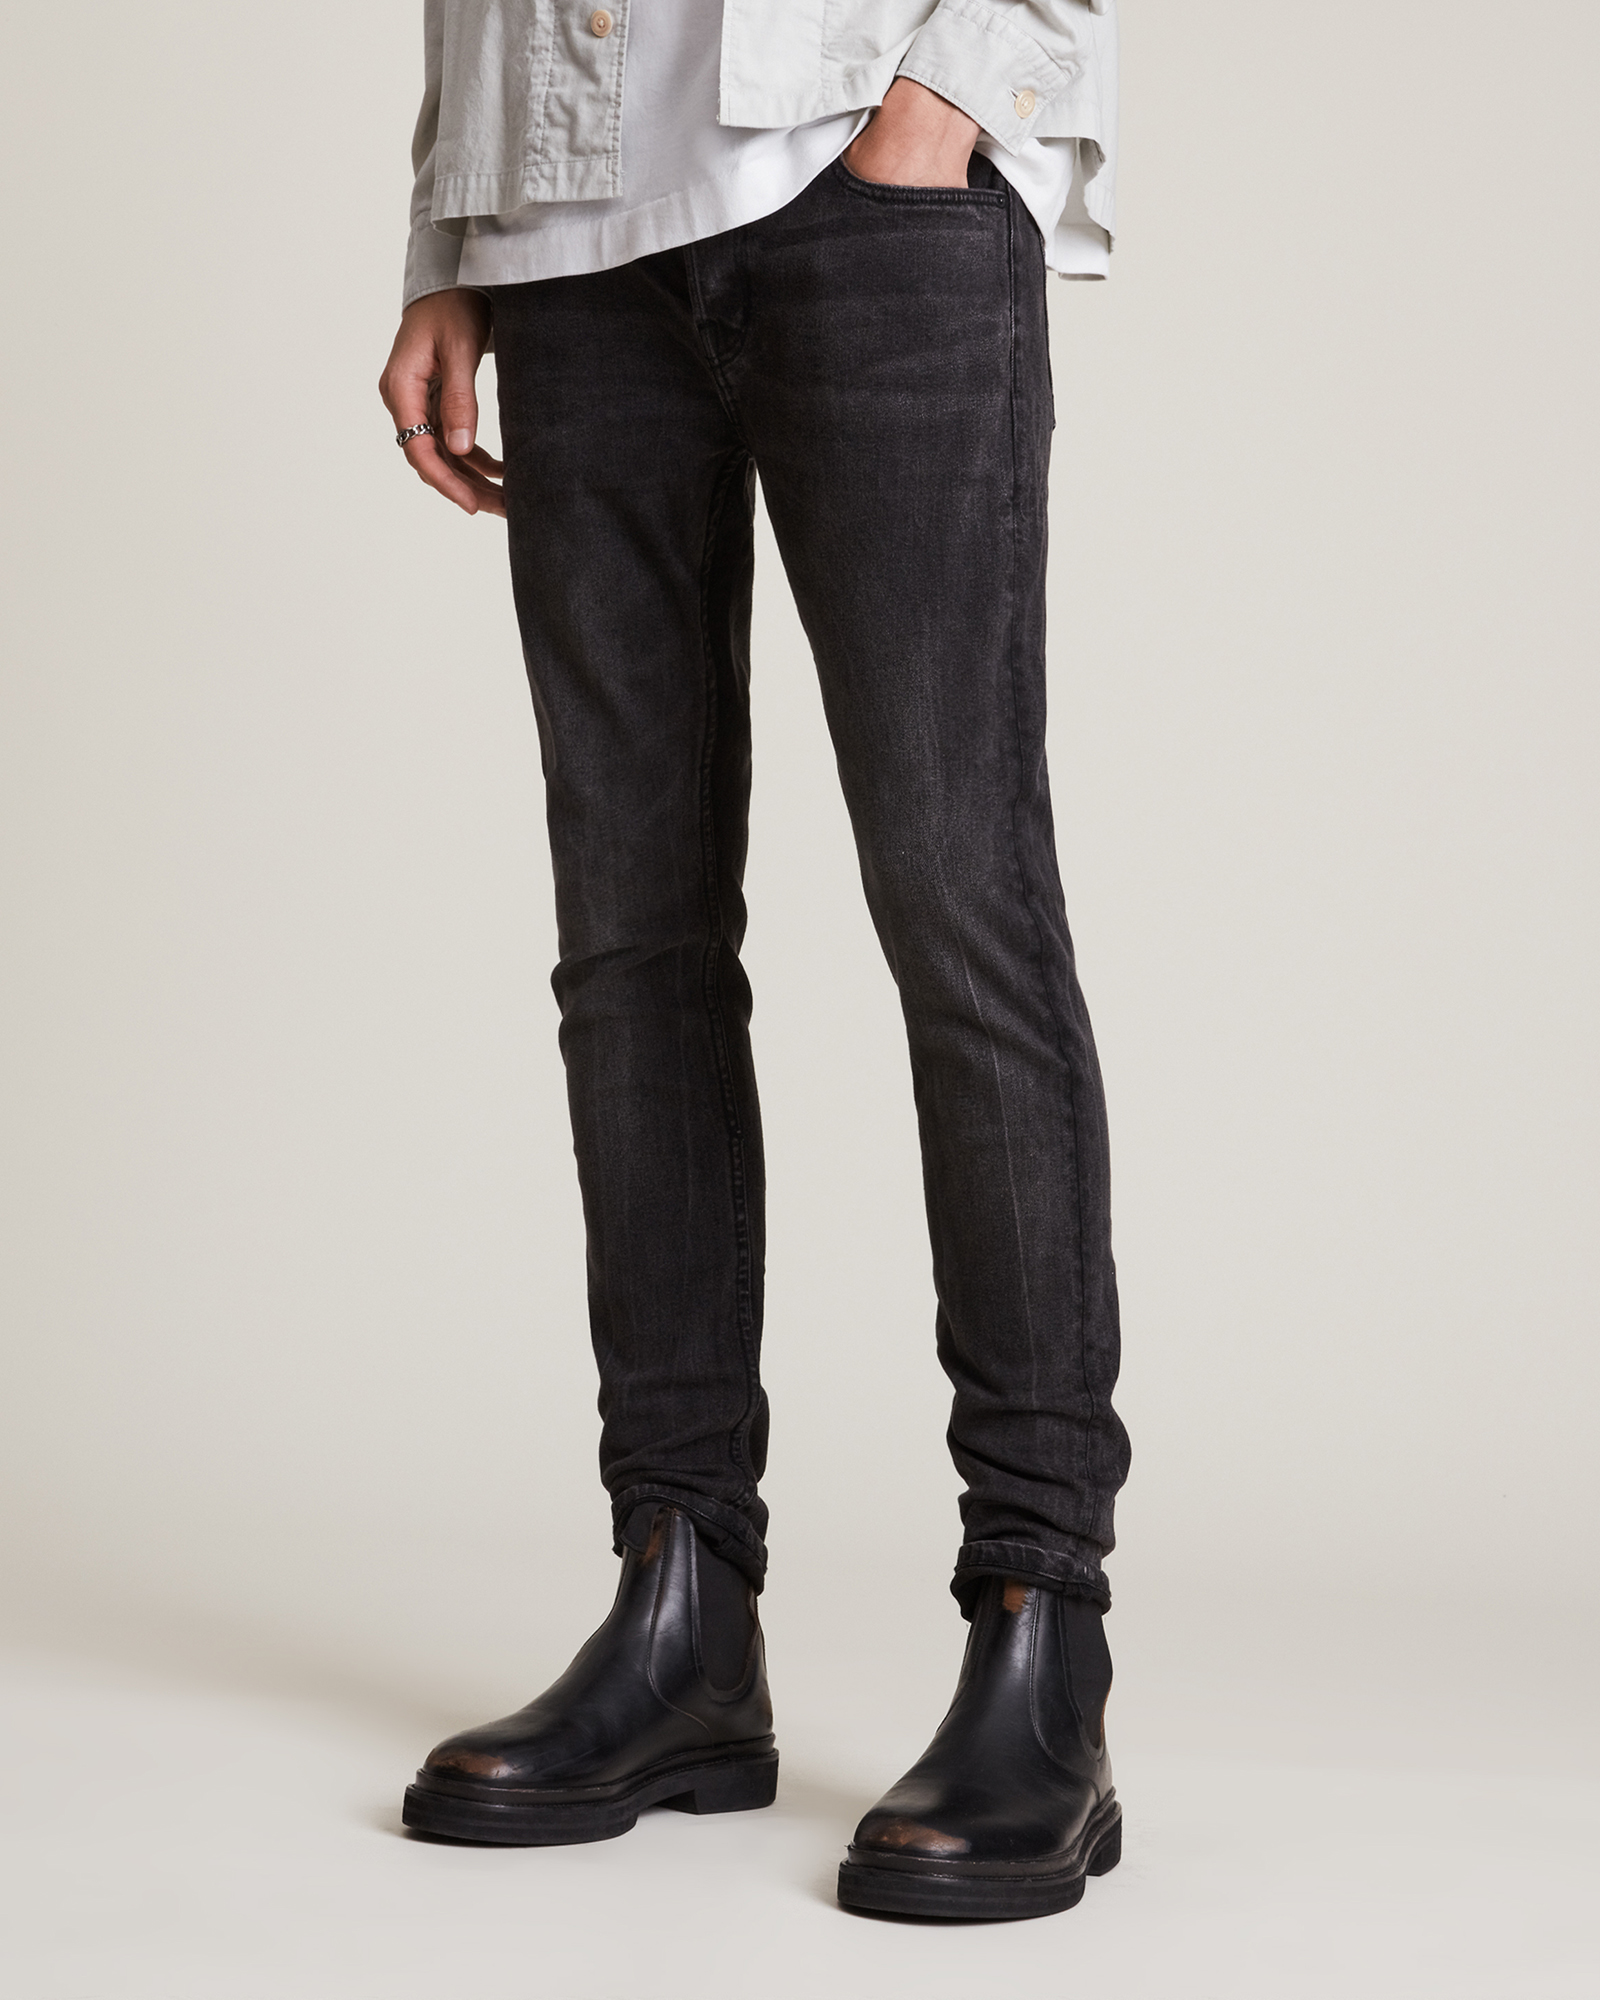 Travis SKINNY Jeans for Tall Men in Dark Smoke